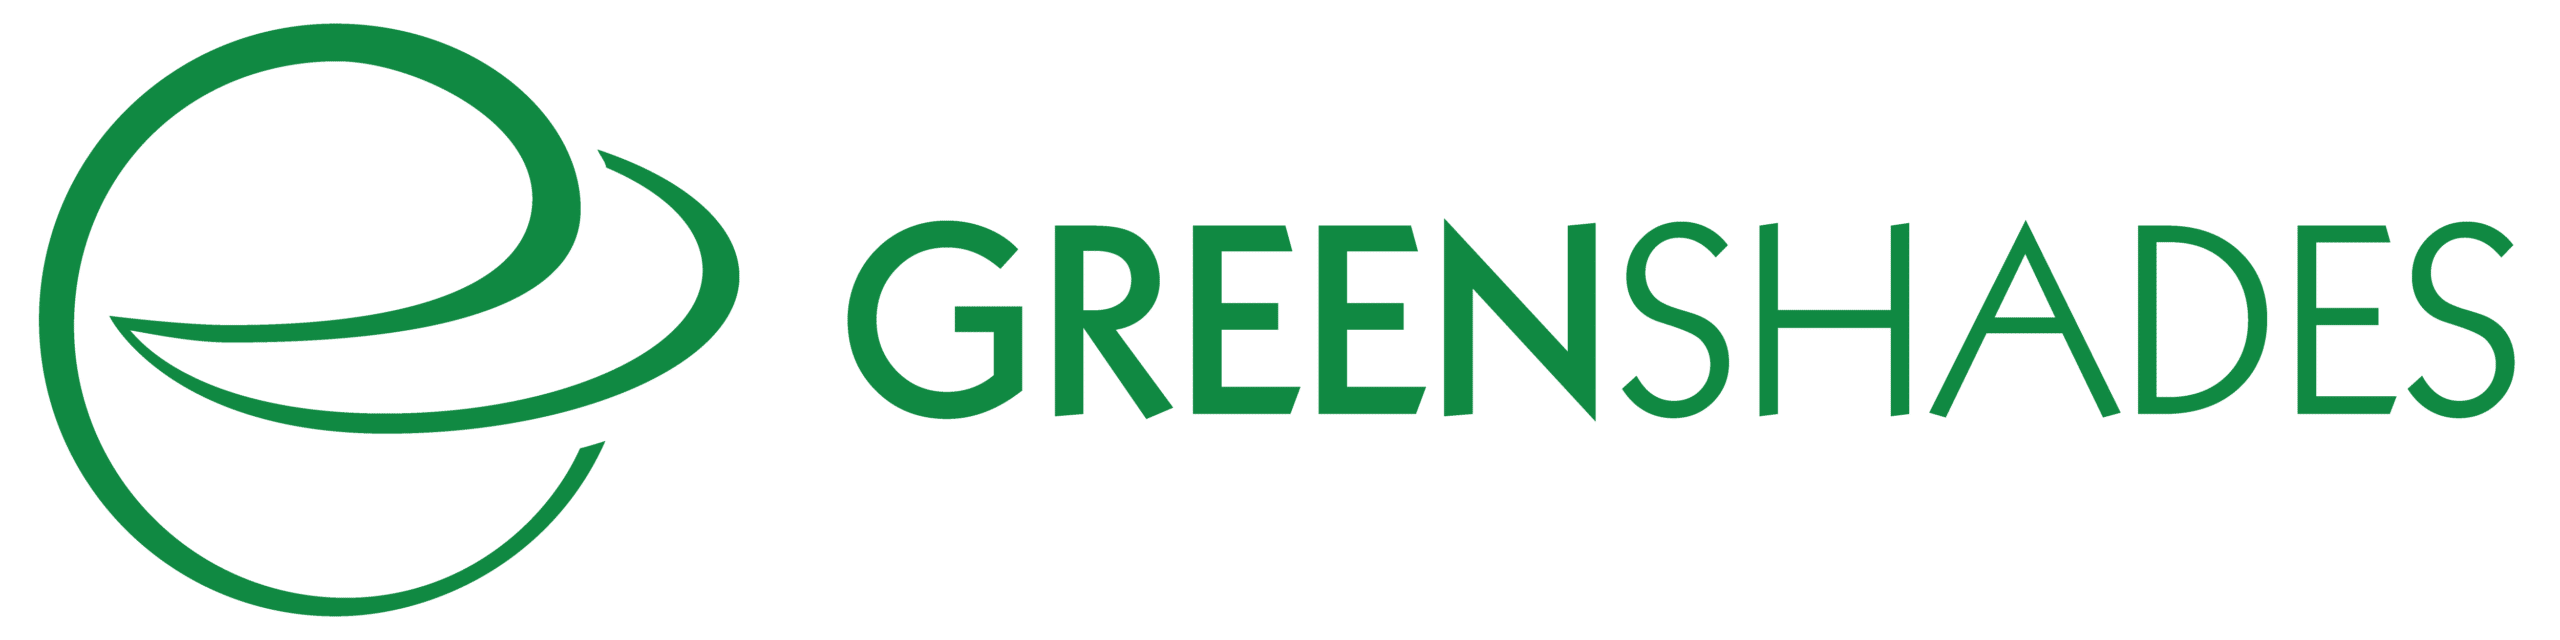 GreenShades Software